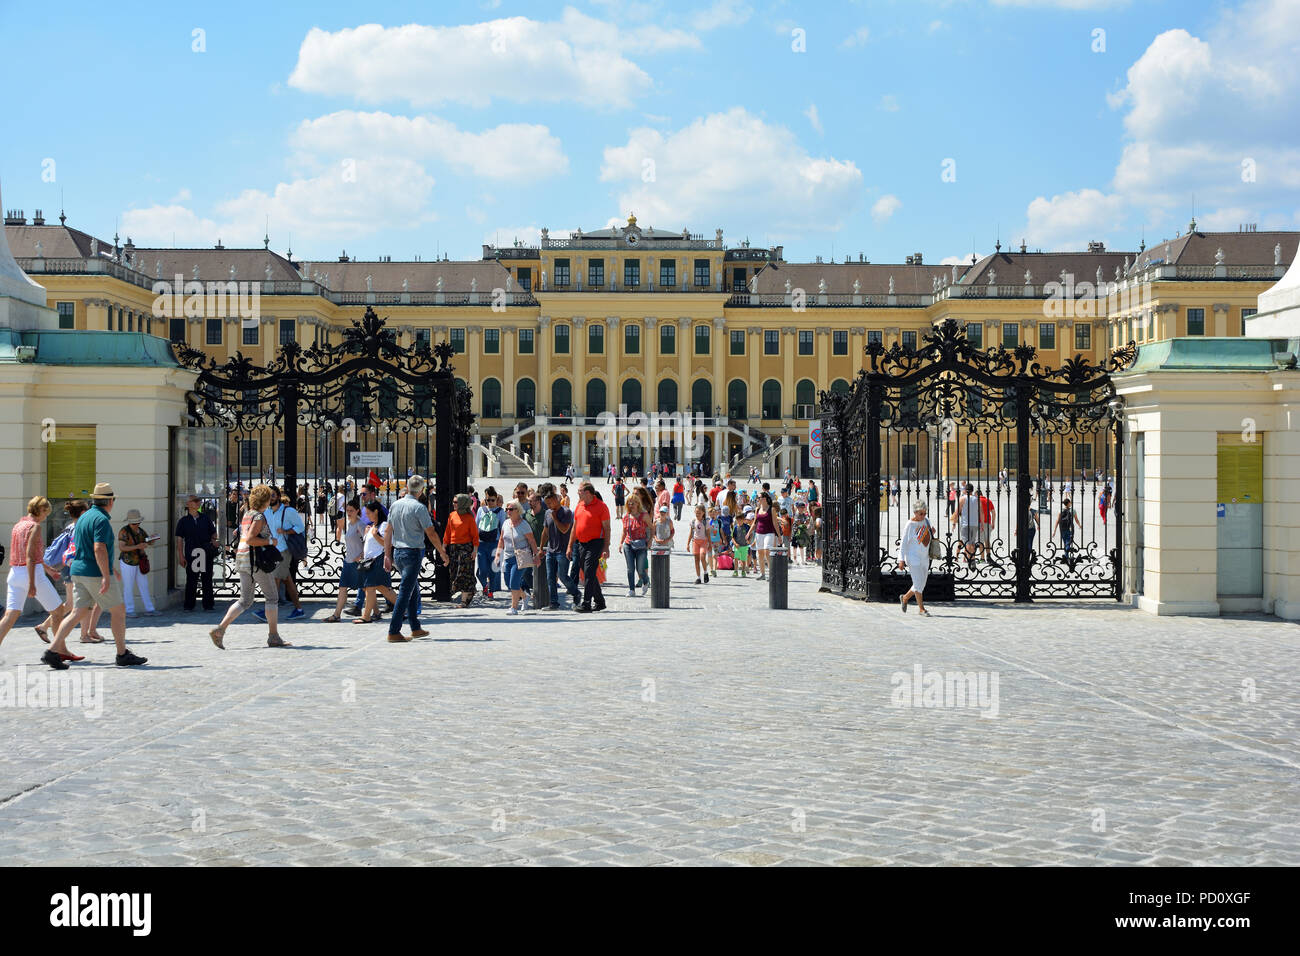 Vienne, Autriche - 20 juin 2018 : entrée principale du palais et jardins de Schönbrunn à Vienne - Autriche. Banque D'Images